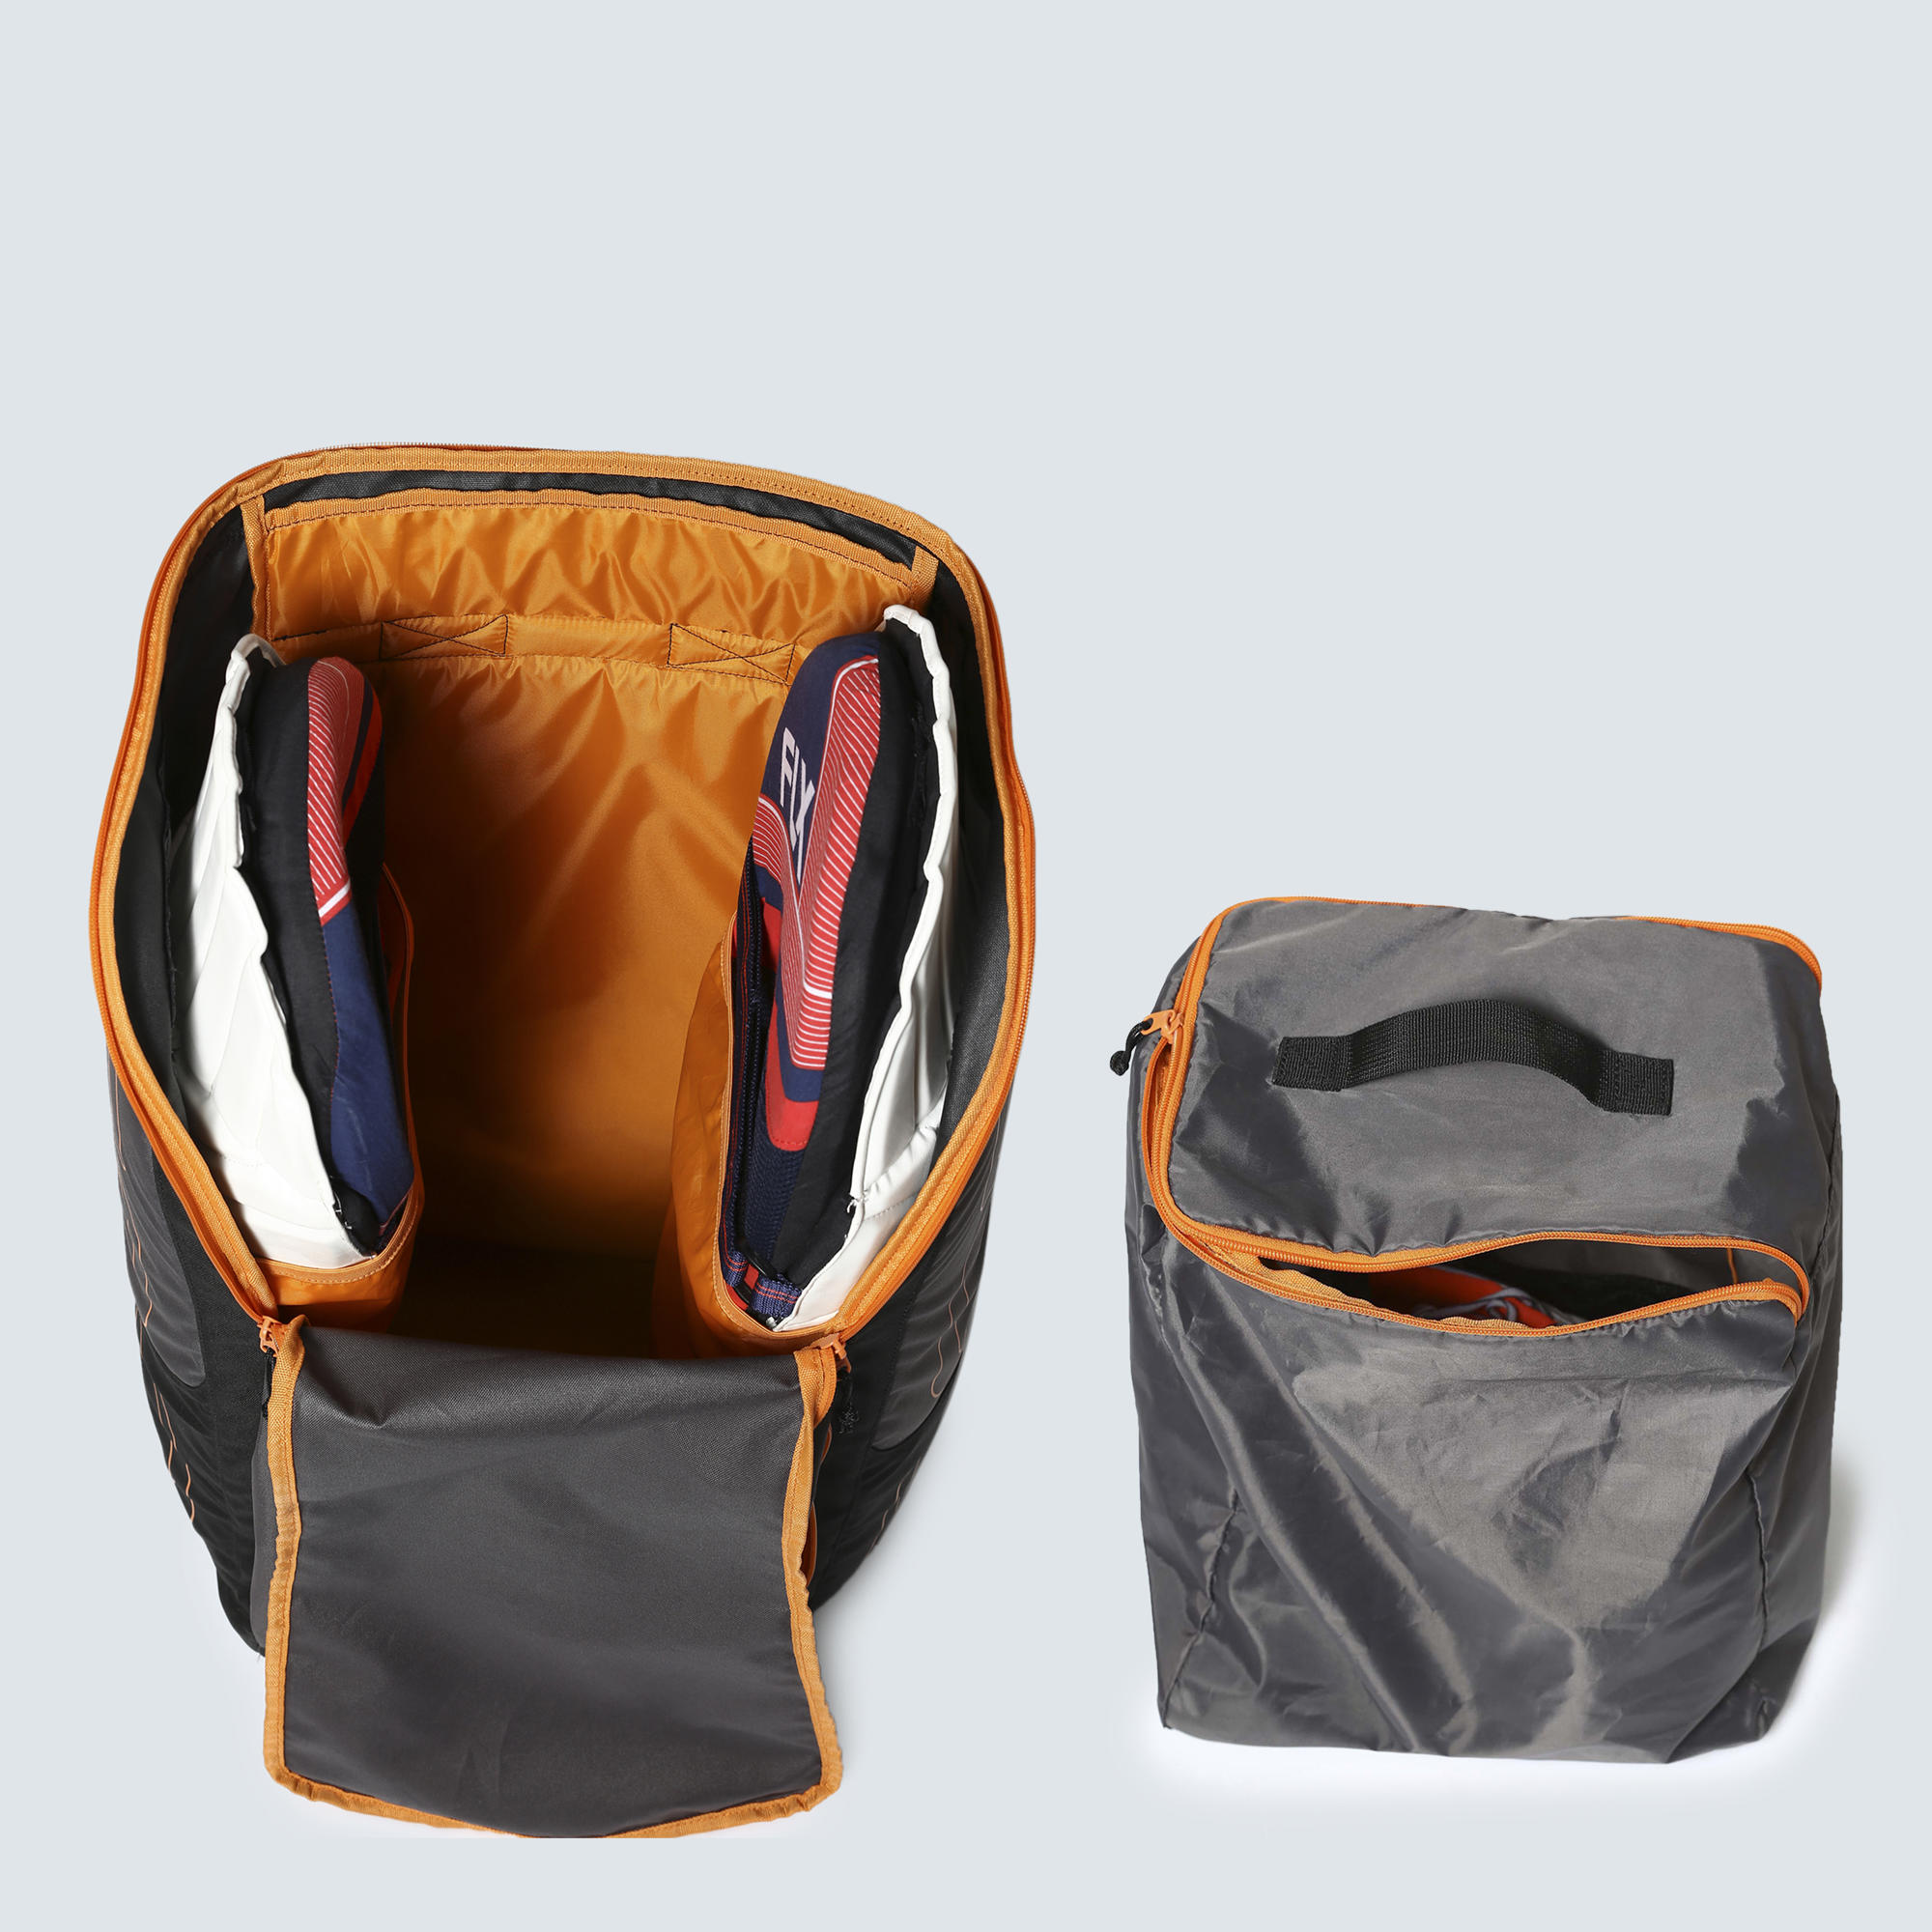 Cricket gear bag - Adults - Black, Deep orange - Flx - Decathlon